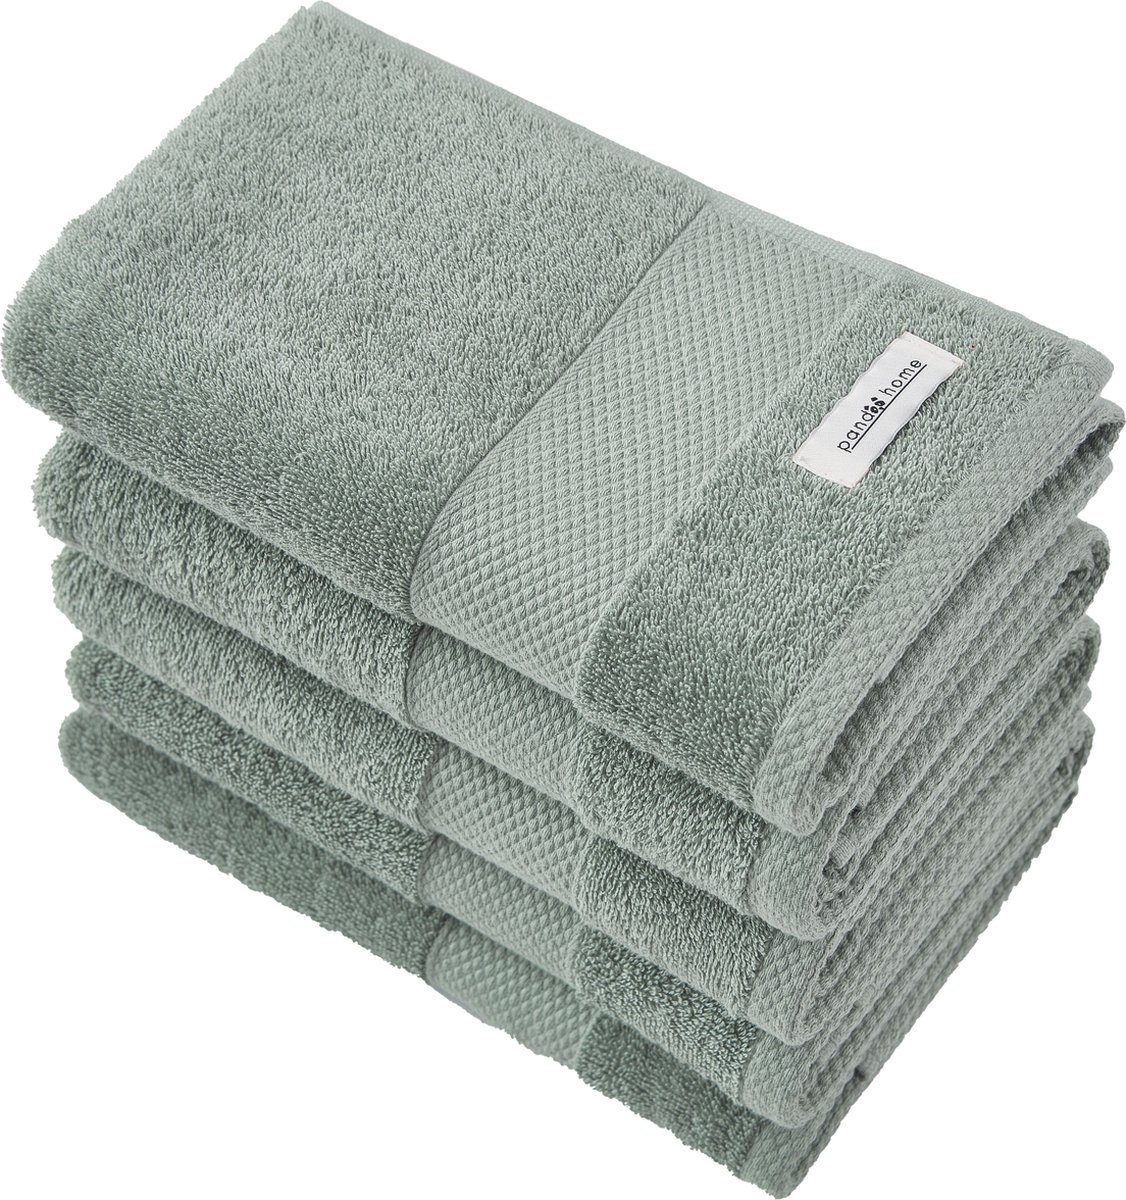 PandaHome - Handdoeken - 5 delig - 5 Badhanddoeken 50x100 cm - 100% Katoen - Groen Handdoek - Vintage Green